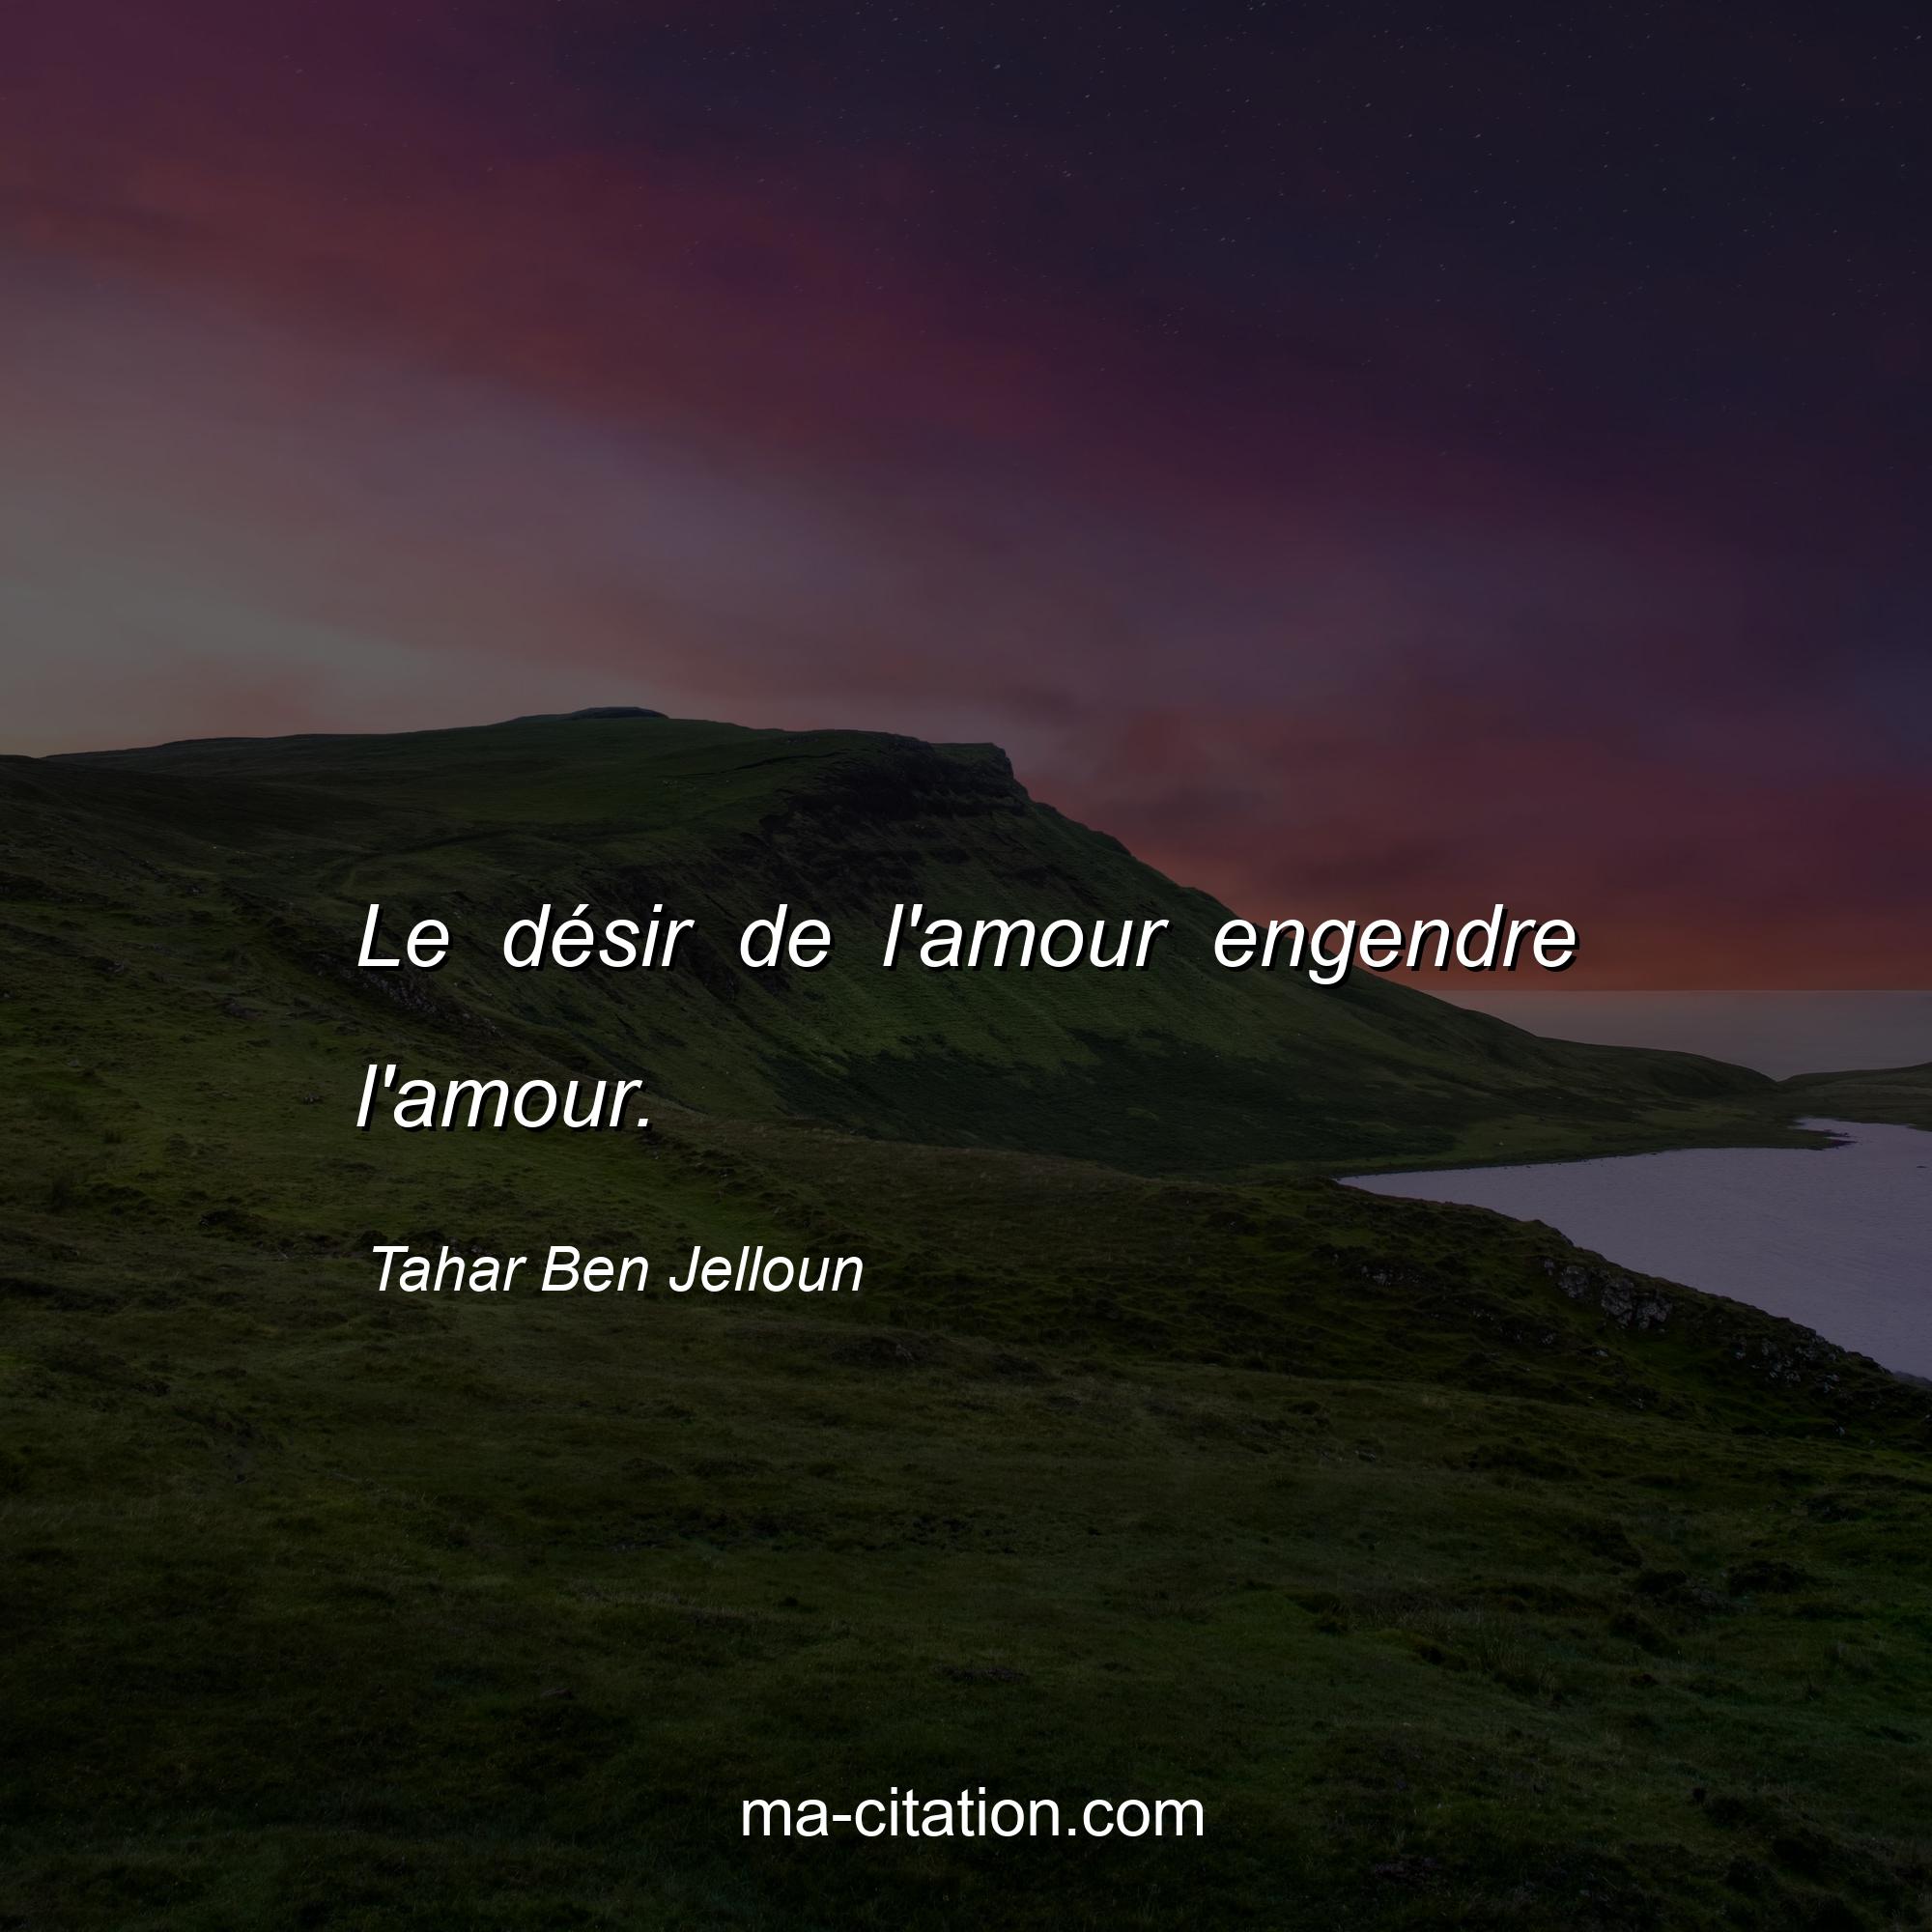 Tahar Ben Jelloun : Le désir de l'amour engendre l'amour.